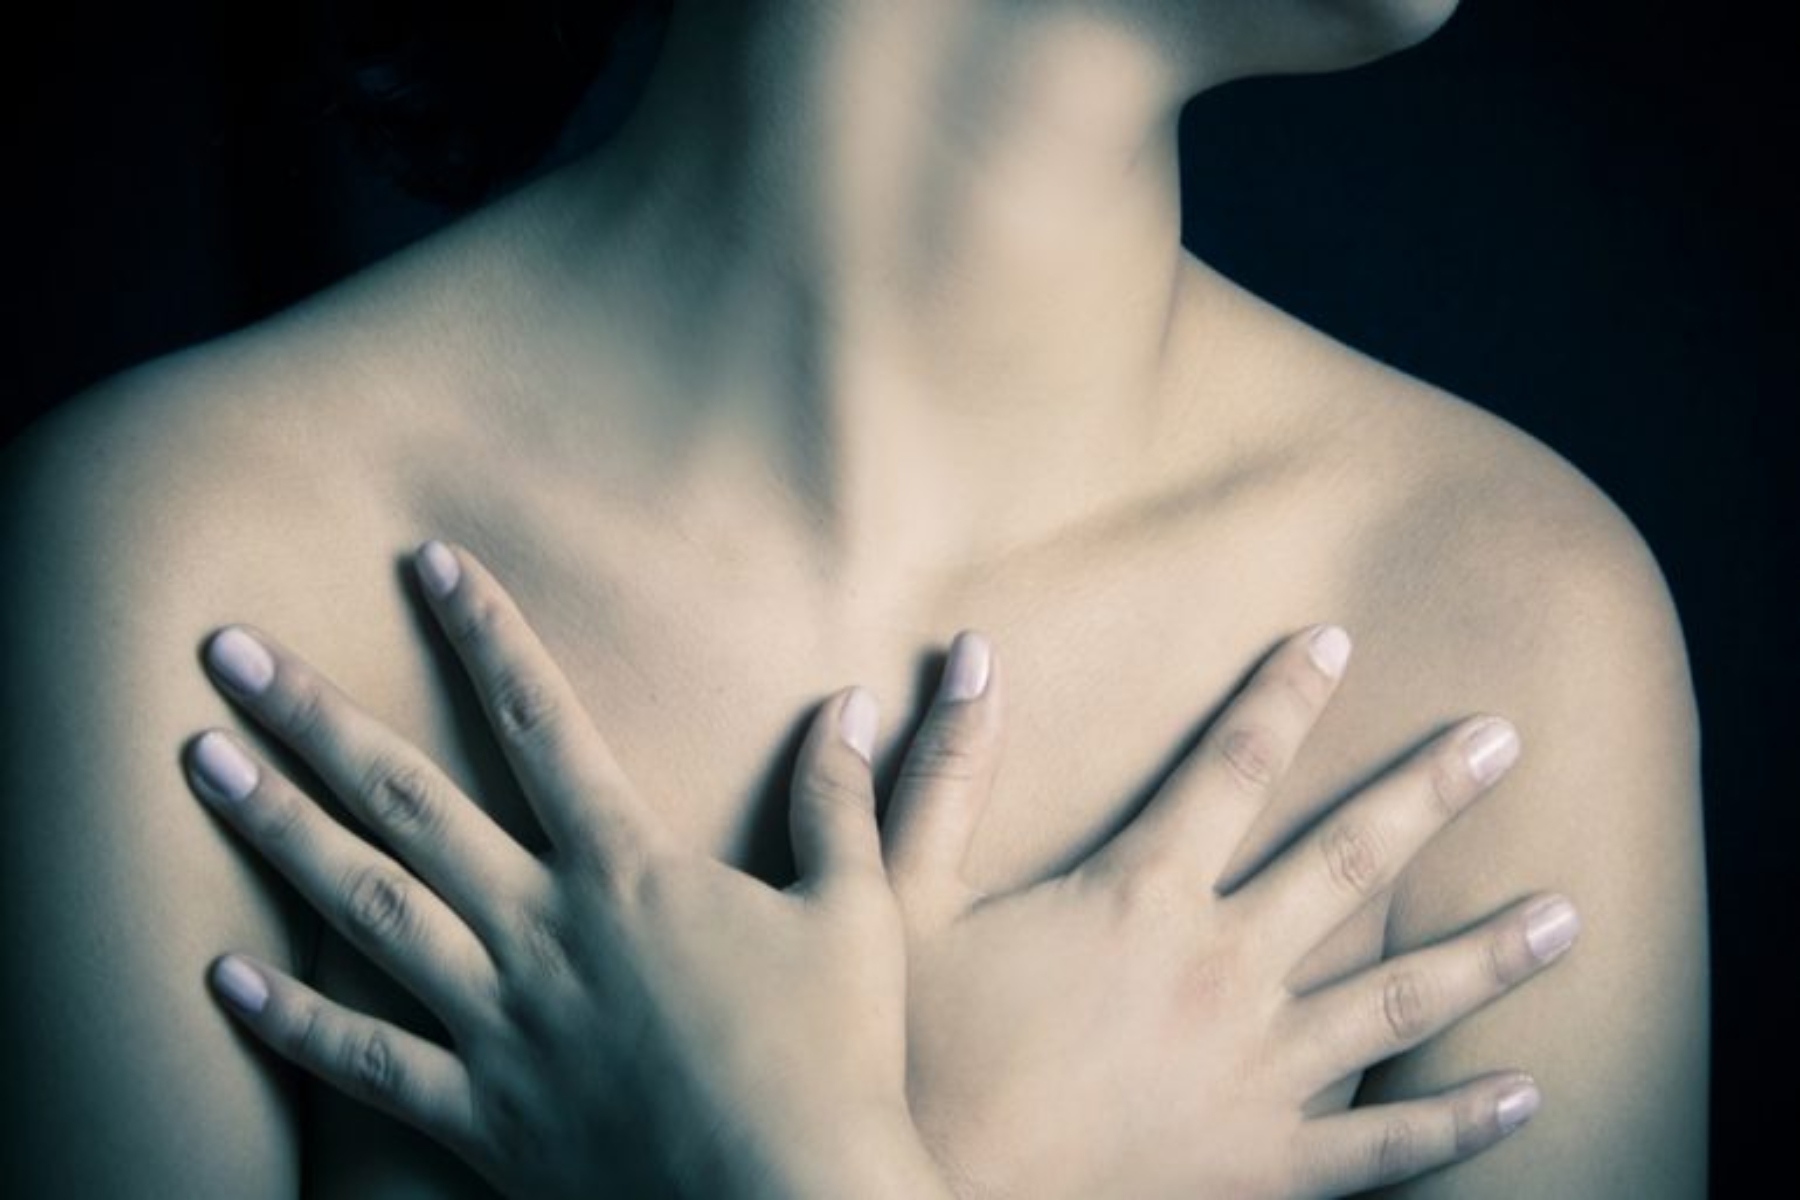 Σεξ καρκίνος: Μπορώ να είμαι σεξουαλικά ενεργή κατά τη διάρκεια της θεραπείας για καρκίνο;